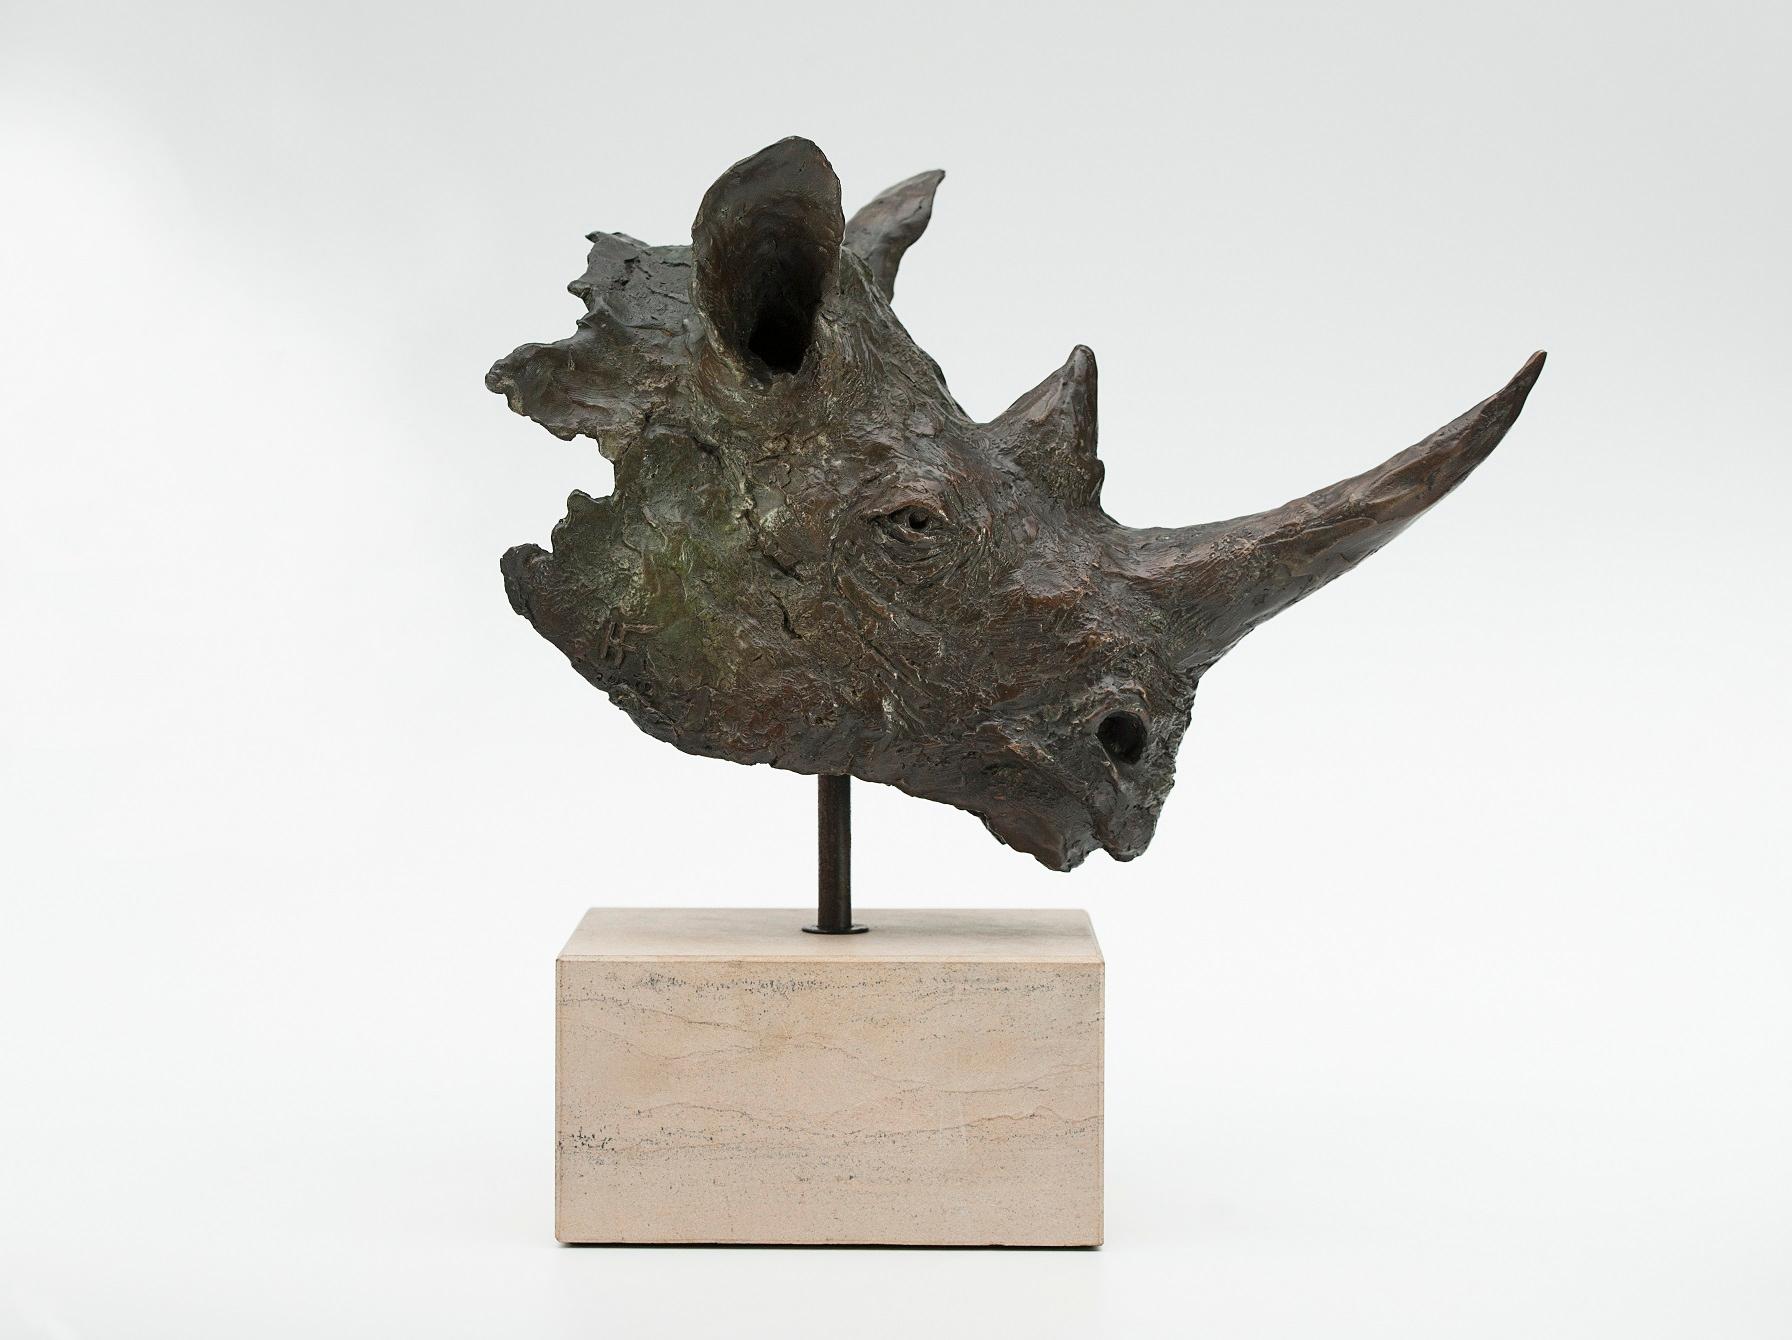 Buste de rhinocéros noir patiné brun-vert, édition limitée à 12 exemplaires, sculpture en bronze sur socle en grès. La première fois que j'ai sculpté sur le terrain, tout ce que j'ai vu de ce magnifique rhinocéros noir, c'est sa tête qui dépassait